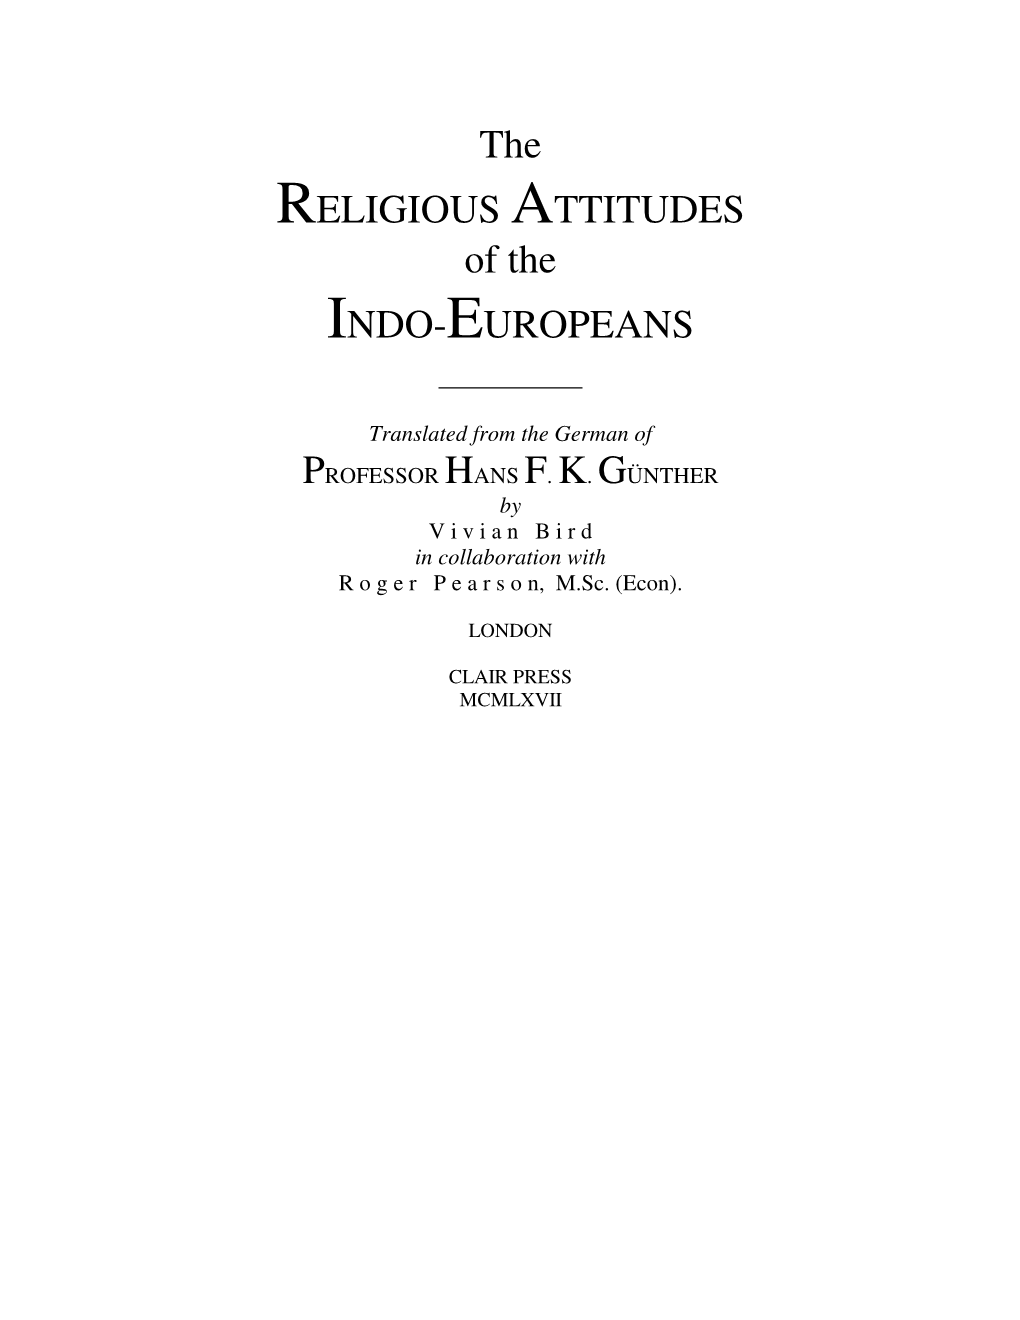 The Religious Attitudes of the Indo-Europeans